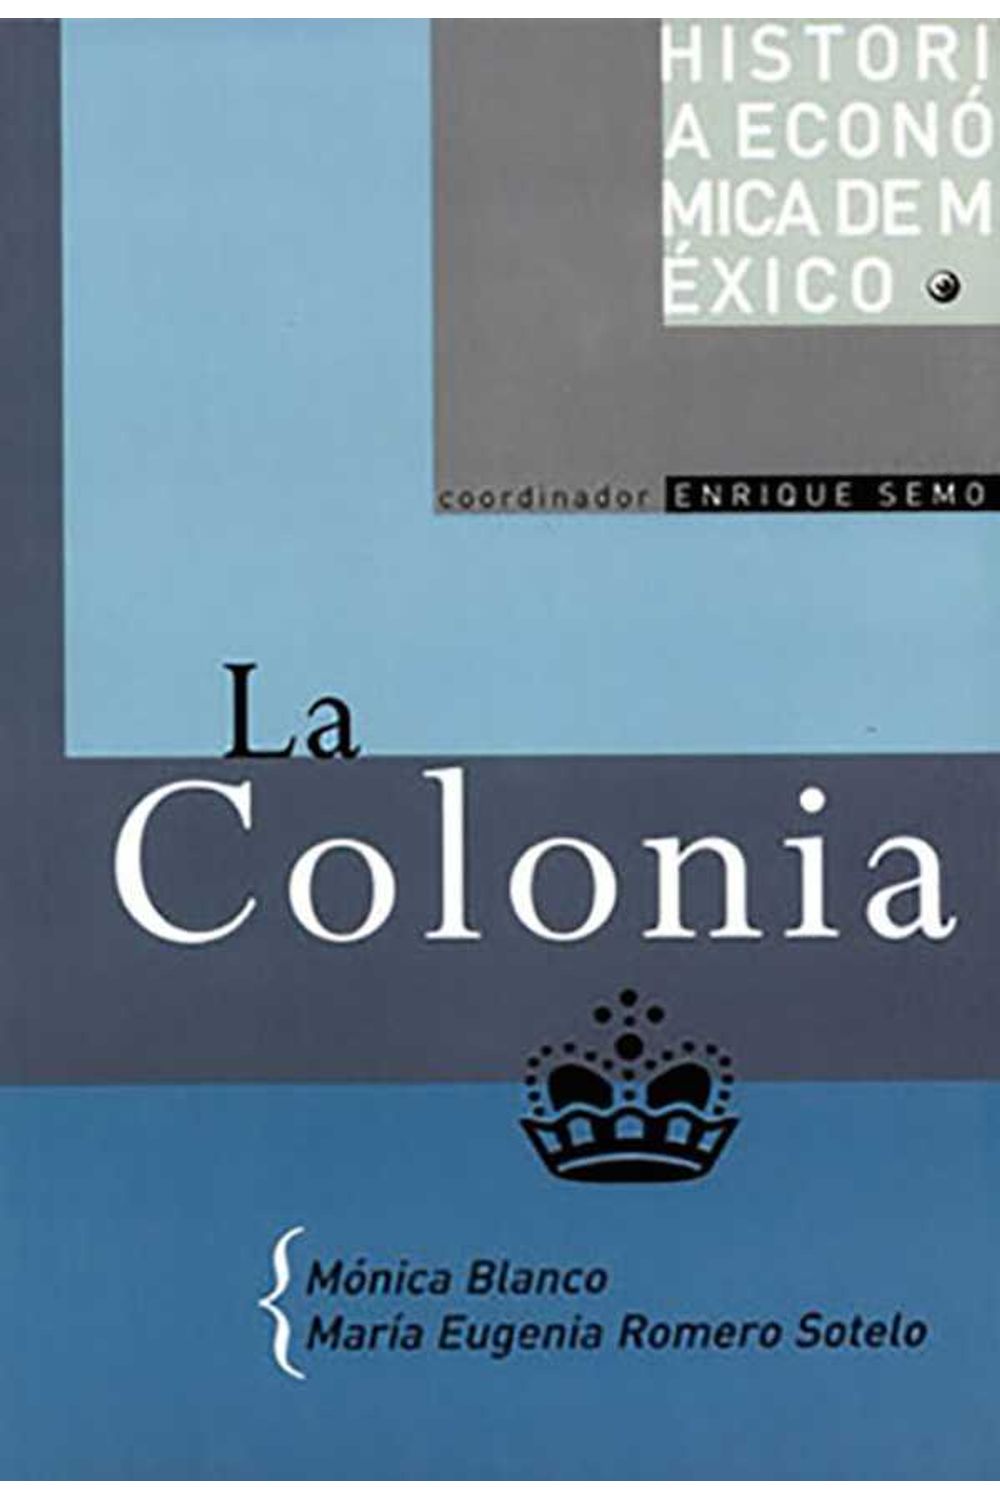 bw-la-colonia-unam-direccin-general-de-publicaciones-y-fomento-editorial-9786070254369